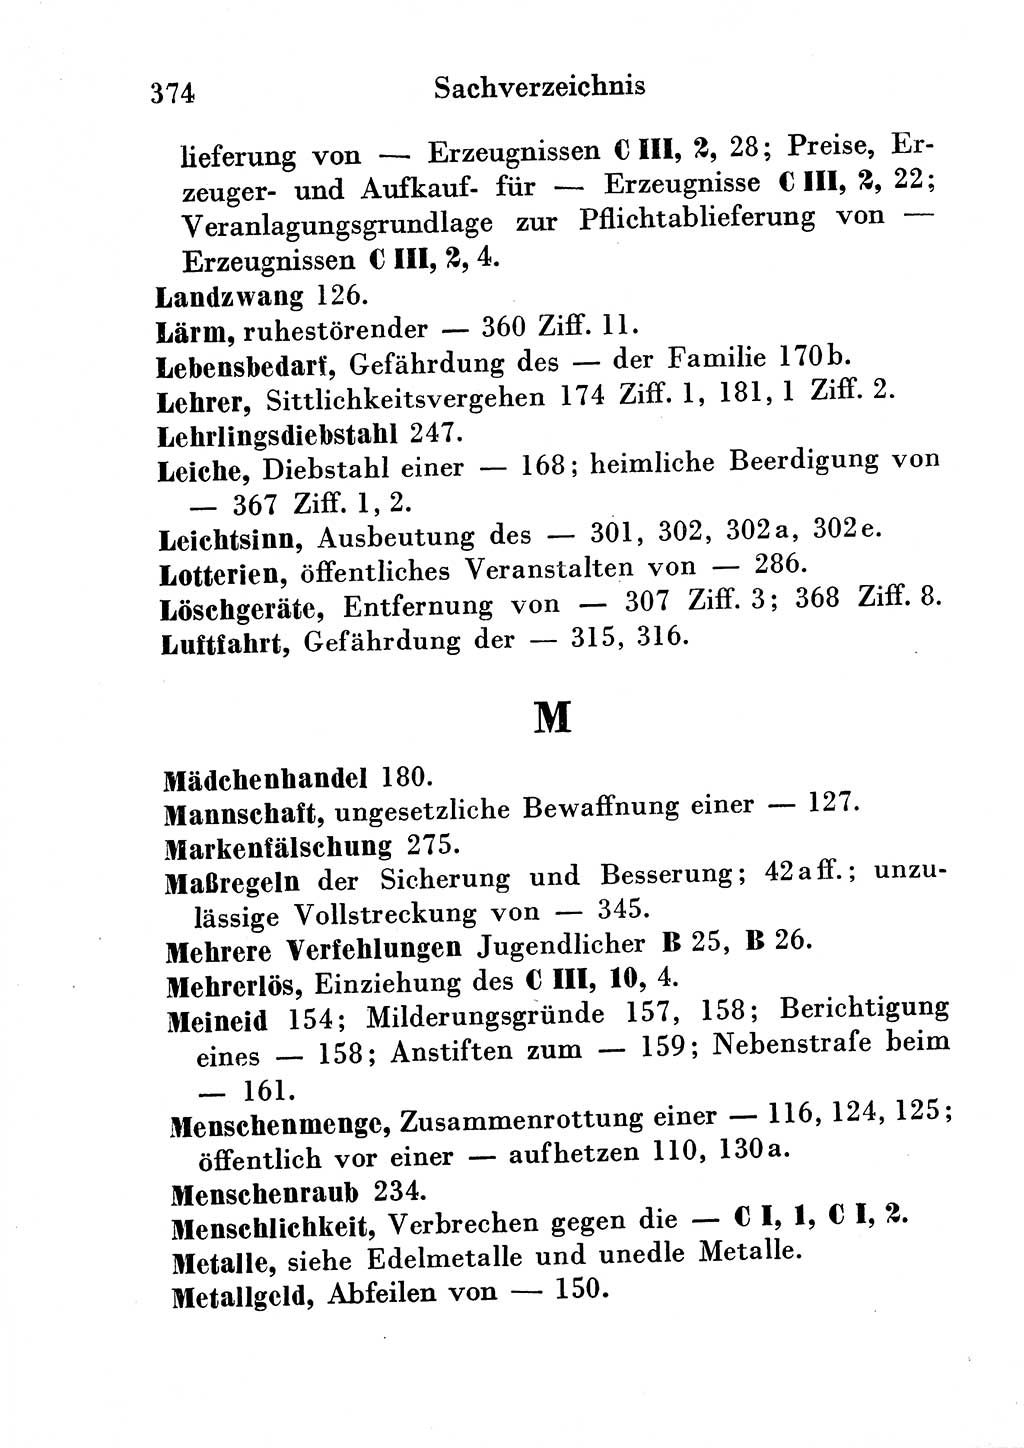 Strafgesetzbuch (StGB) und andere Strafgesetze [Deutsche Demokratische Republik (DDR)] 1954, Seite 374 (StGB Strafges. DDR 1954, S. 374)